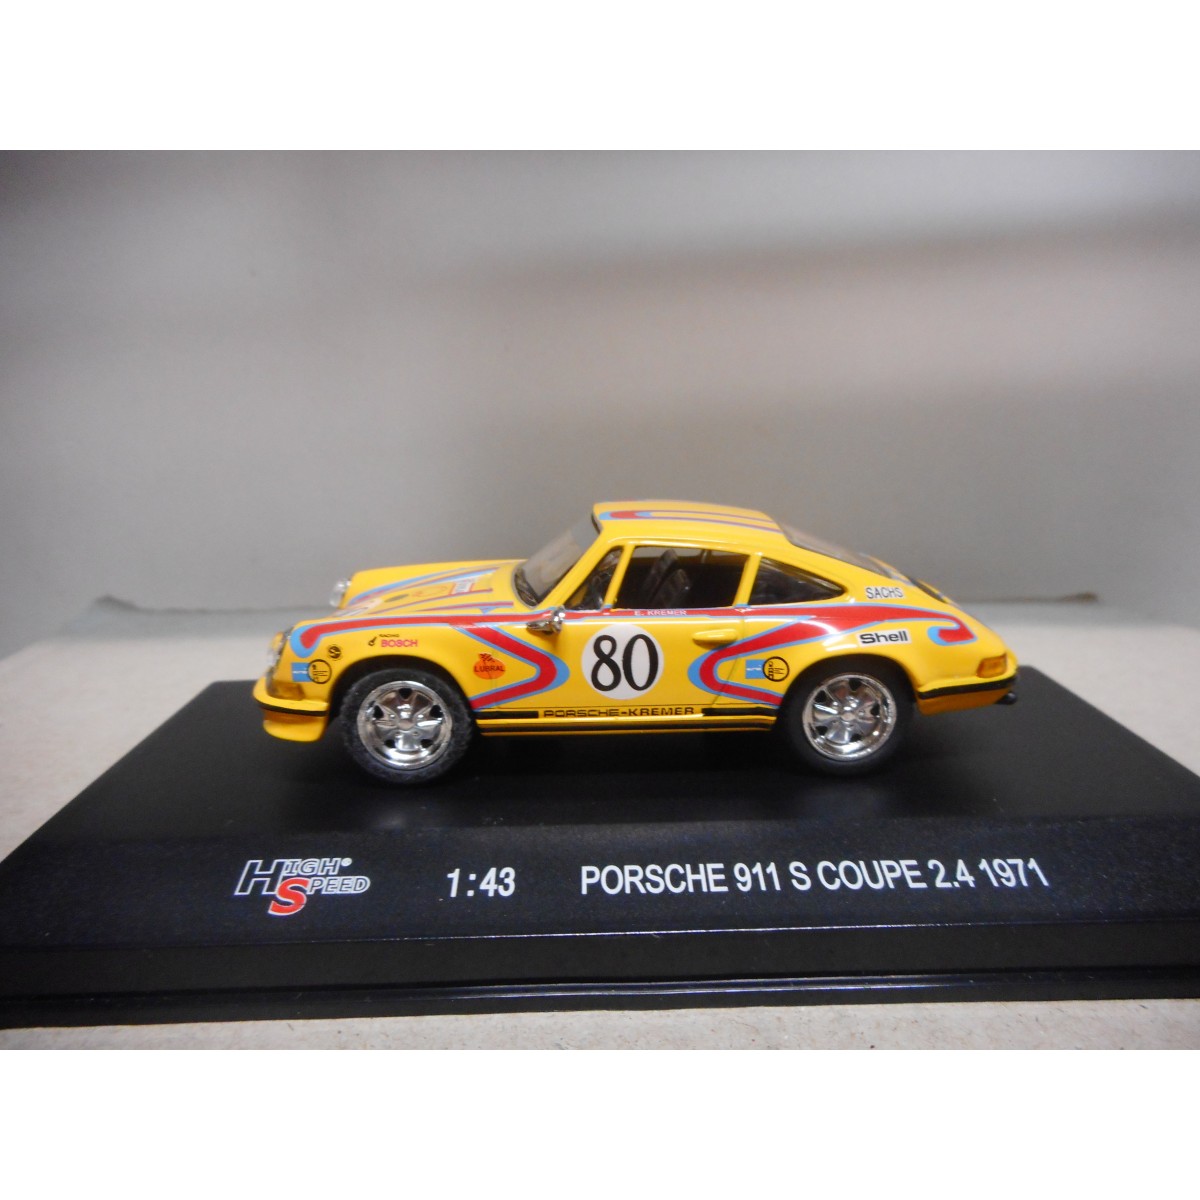 Porsche 911 S Coupe 2 4 1971 High Speed 1 43 Usado Ver Fotos Bcn Stock Cars